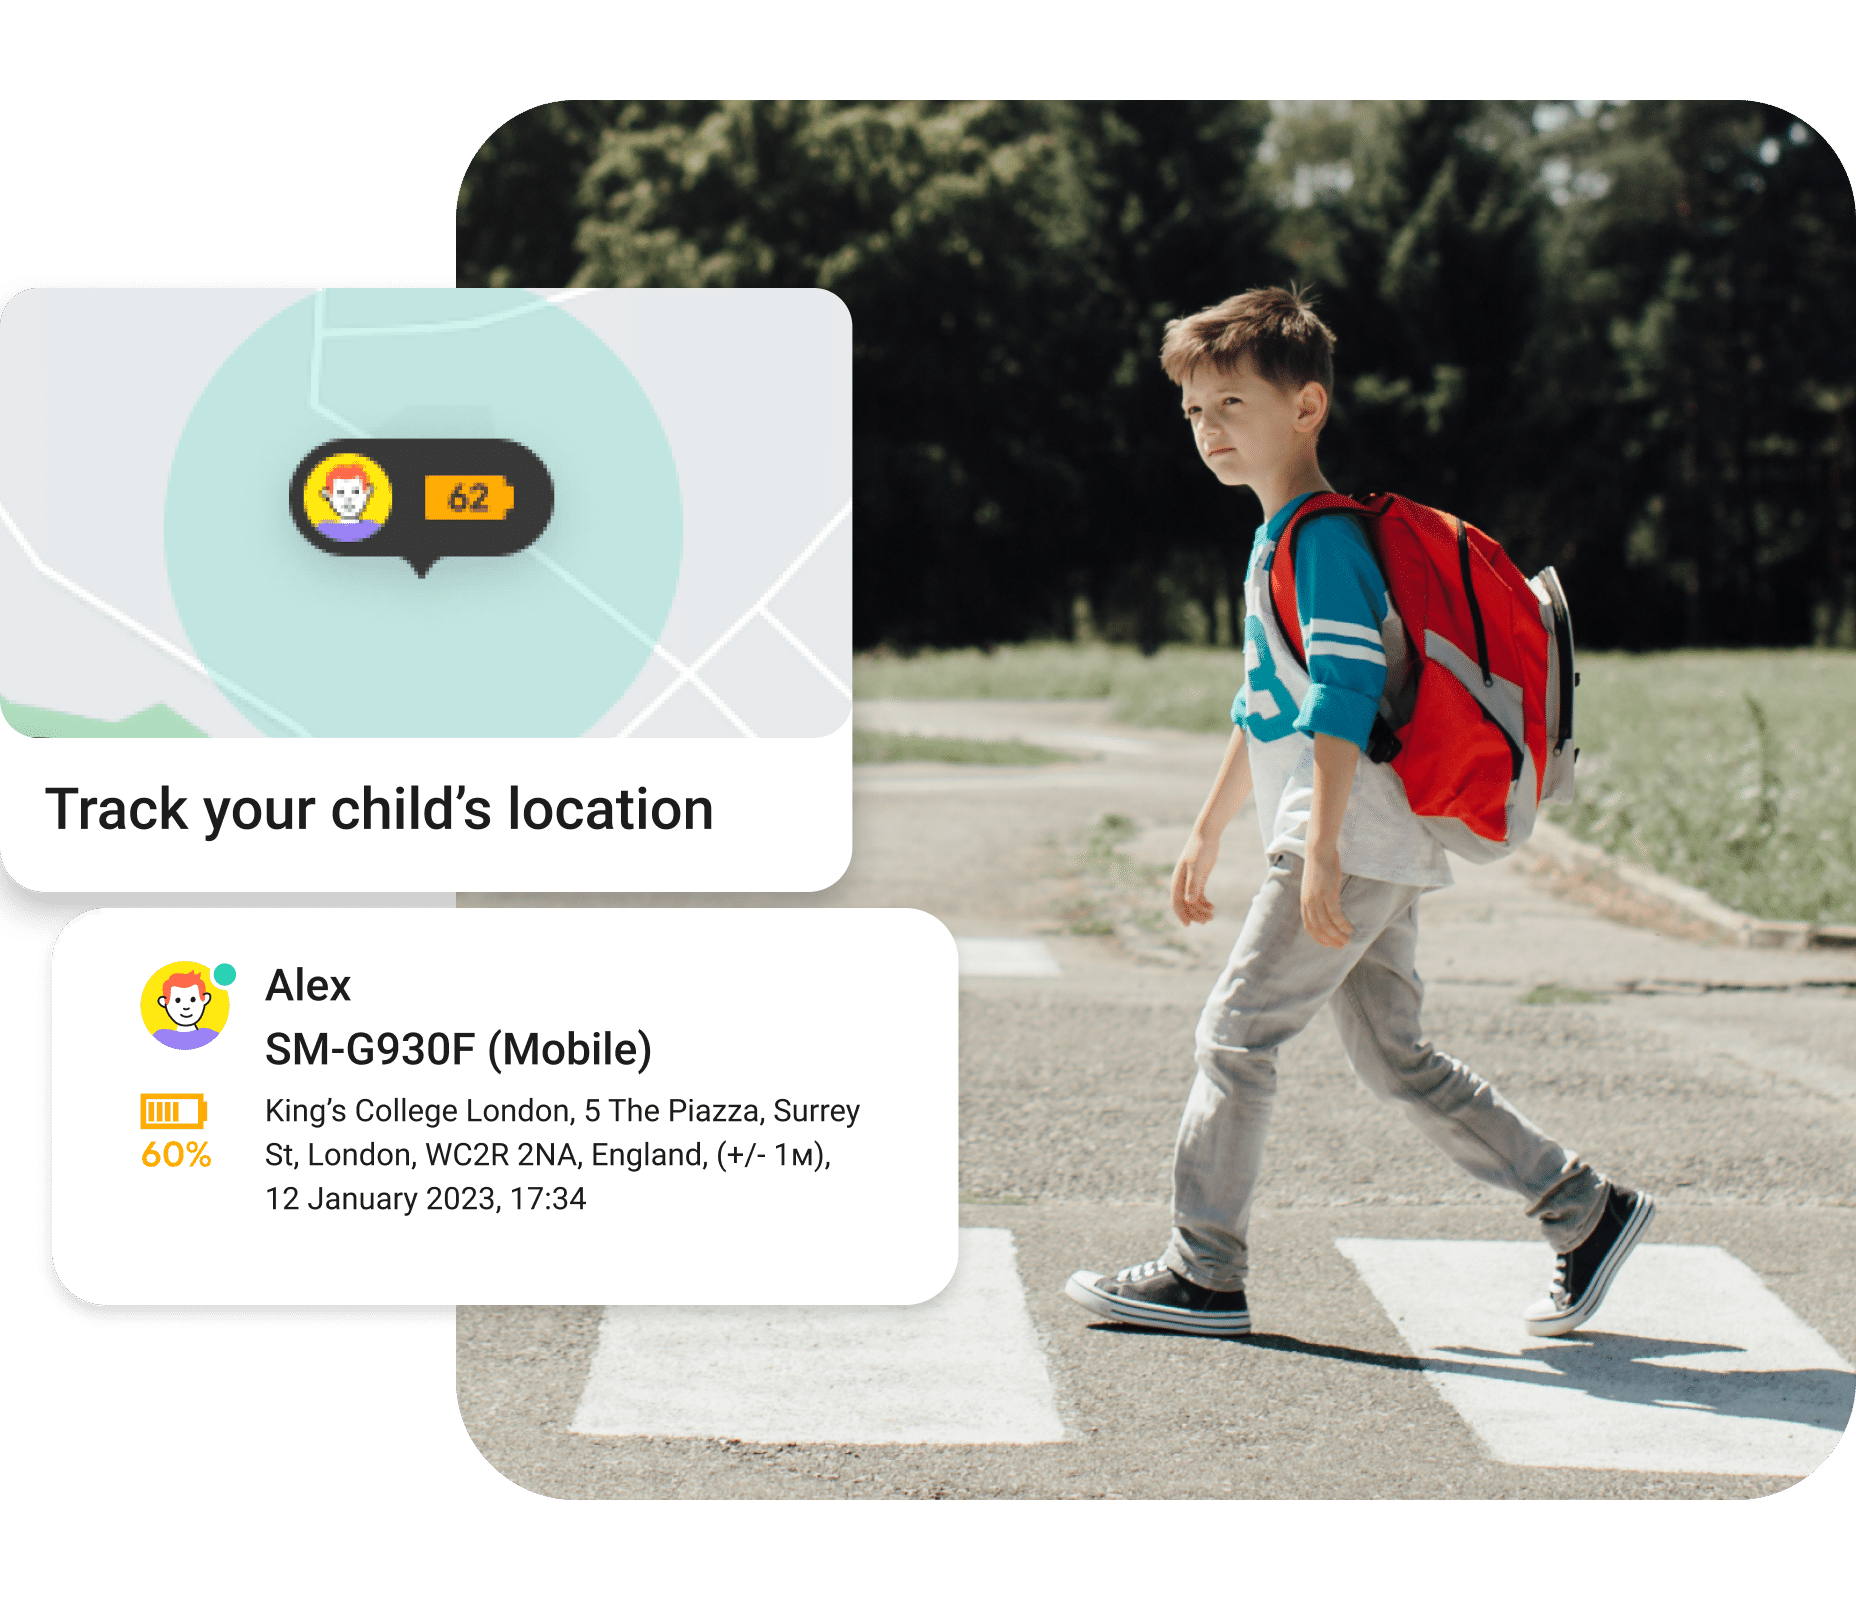 Kaspersky Safe Kids - Parental Control Software to Protect Children